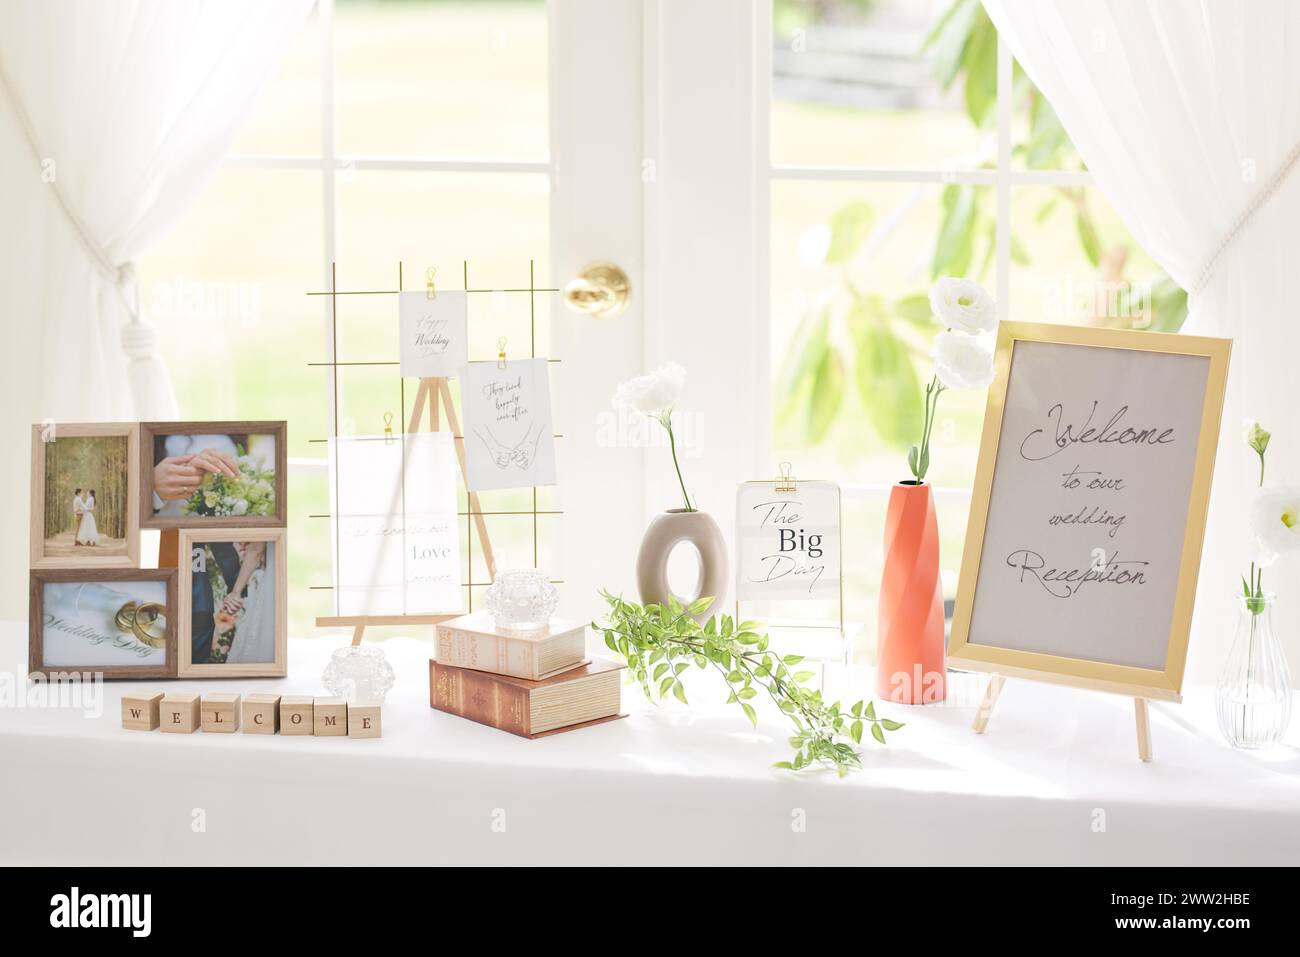 Table de réception de mariage avec des fleurs et un signe de bienvenue Banque D'Images